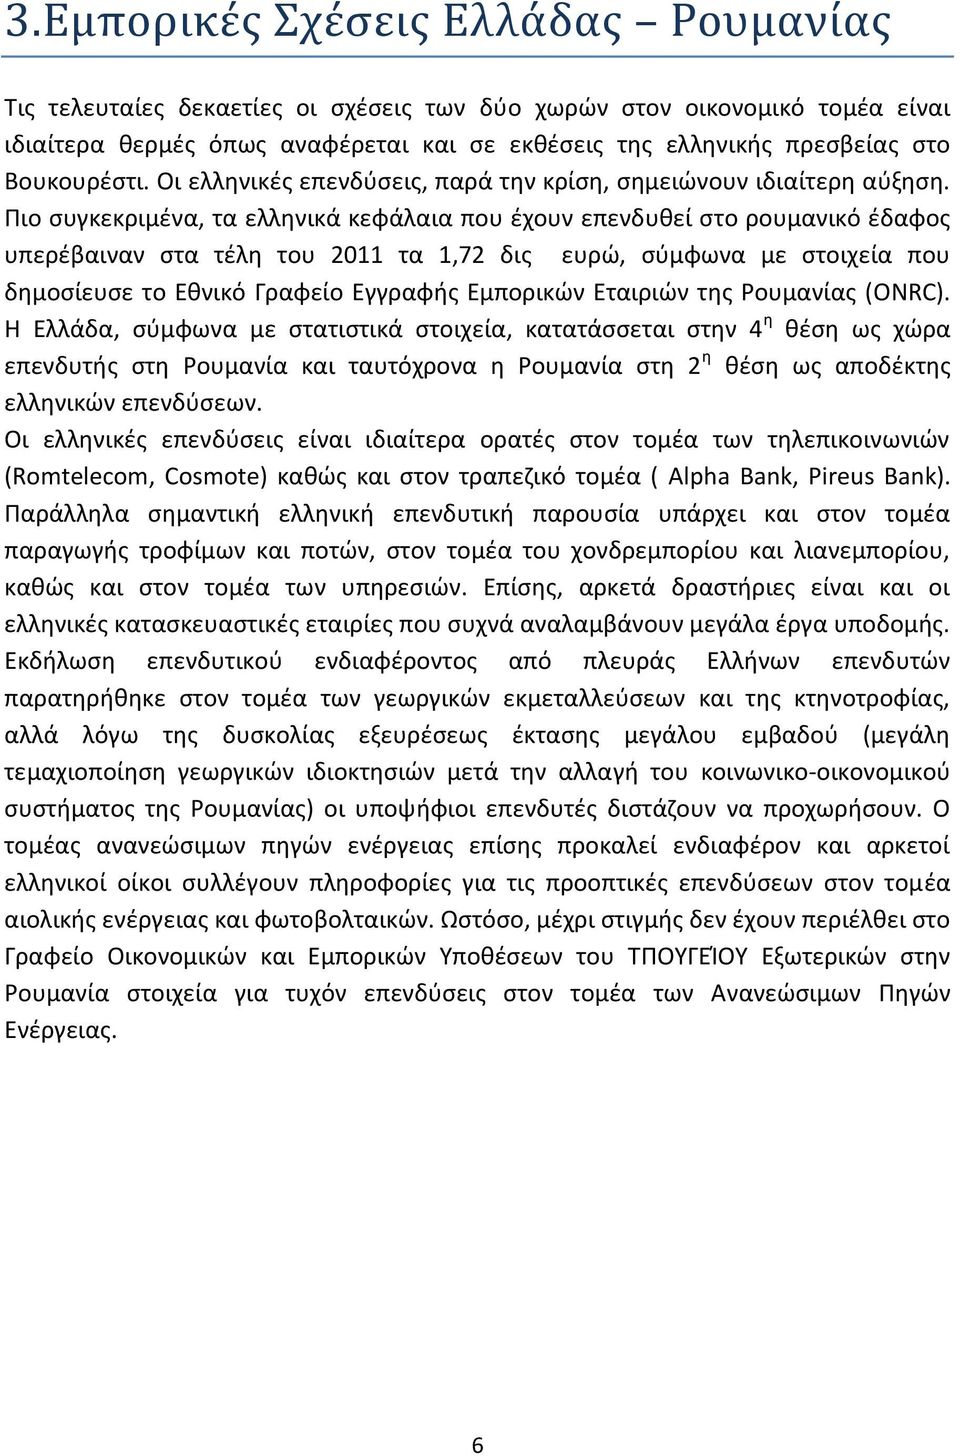 Ριο ςυγκεκριμζνα, τα ελλθνικά κεφάλαια που ζχουν επενδυκεί ςτο ρουμανικό ζδαφοσ υπερζβαιναν ςτα τζλθ του 2011 τα 1,72 δισ ευρϊ, ςφμφωνα με ςτοιχεία που δθμοςίευςε το Εκνικό Γραφείο Εγγραφισ Εμπορικϊν